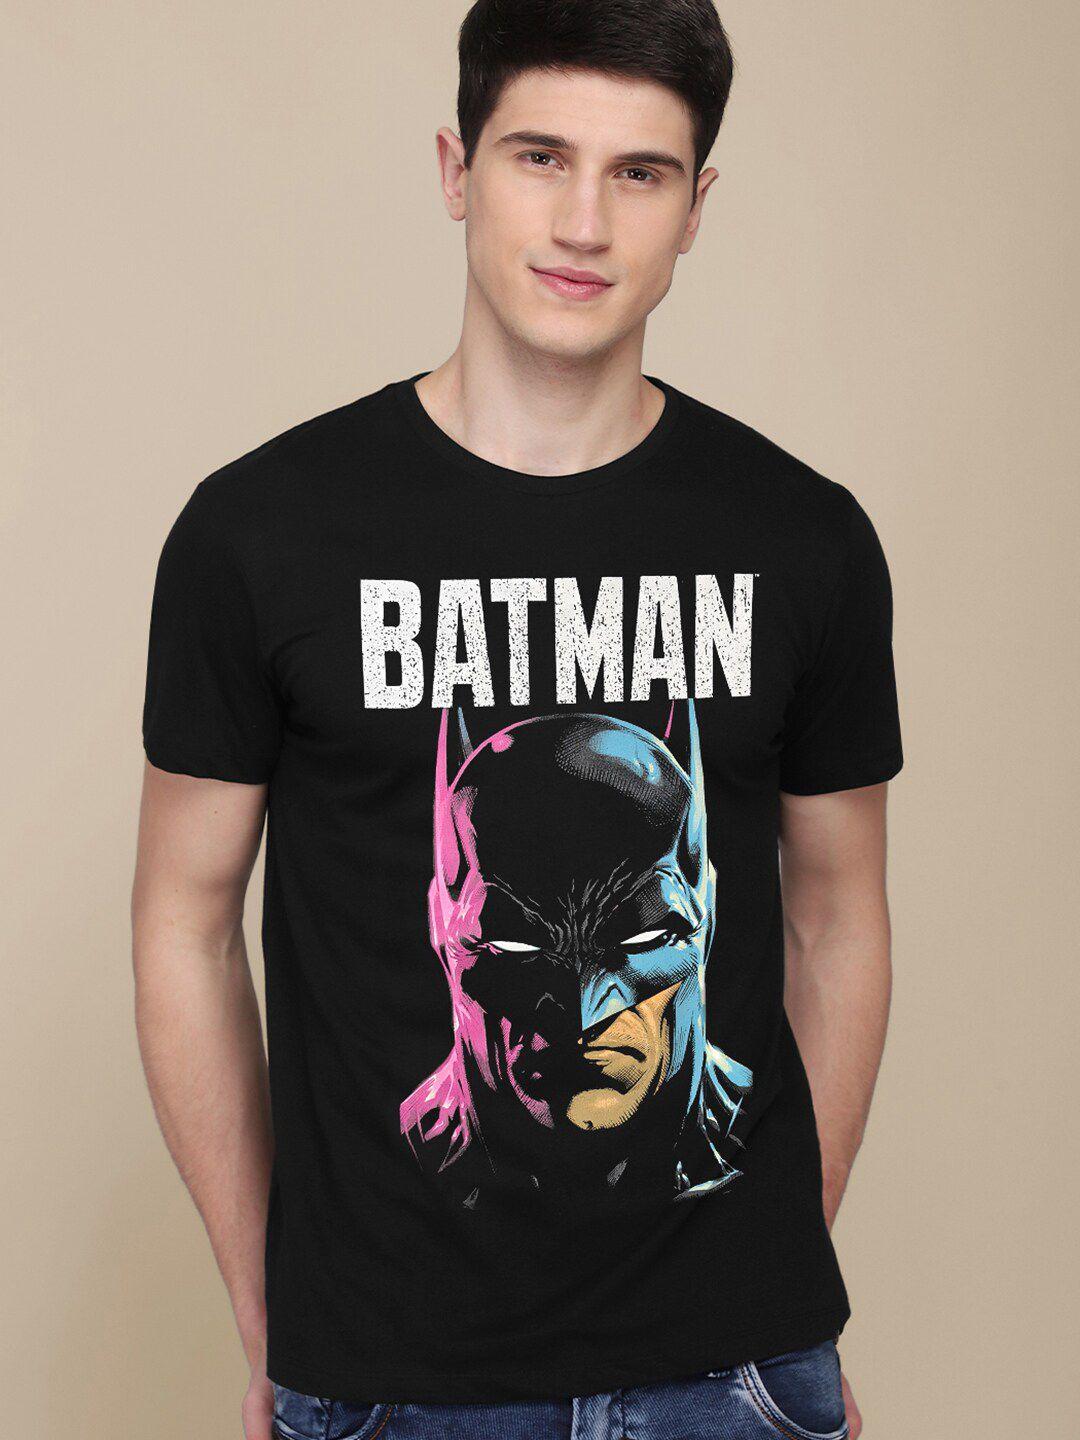 free-authority-men-black-batman-printed-applique-t-shirt